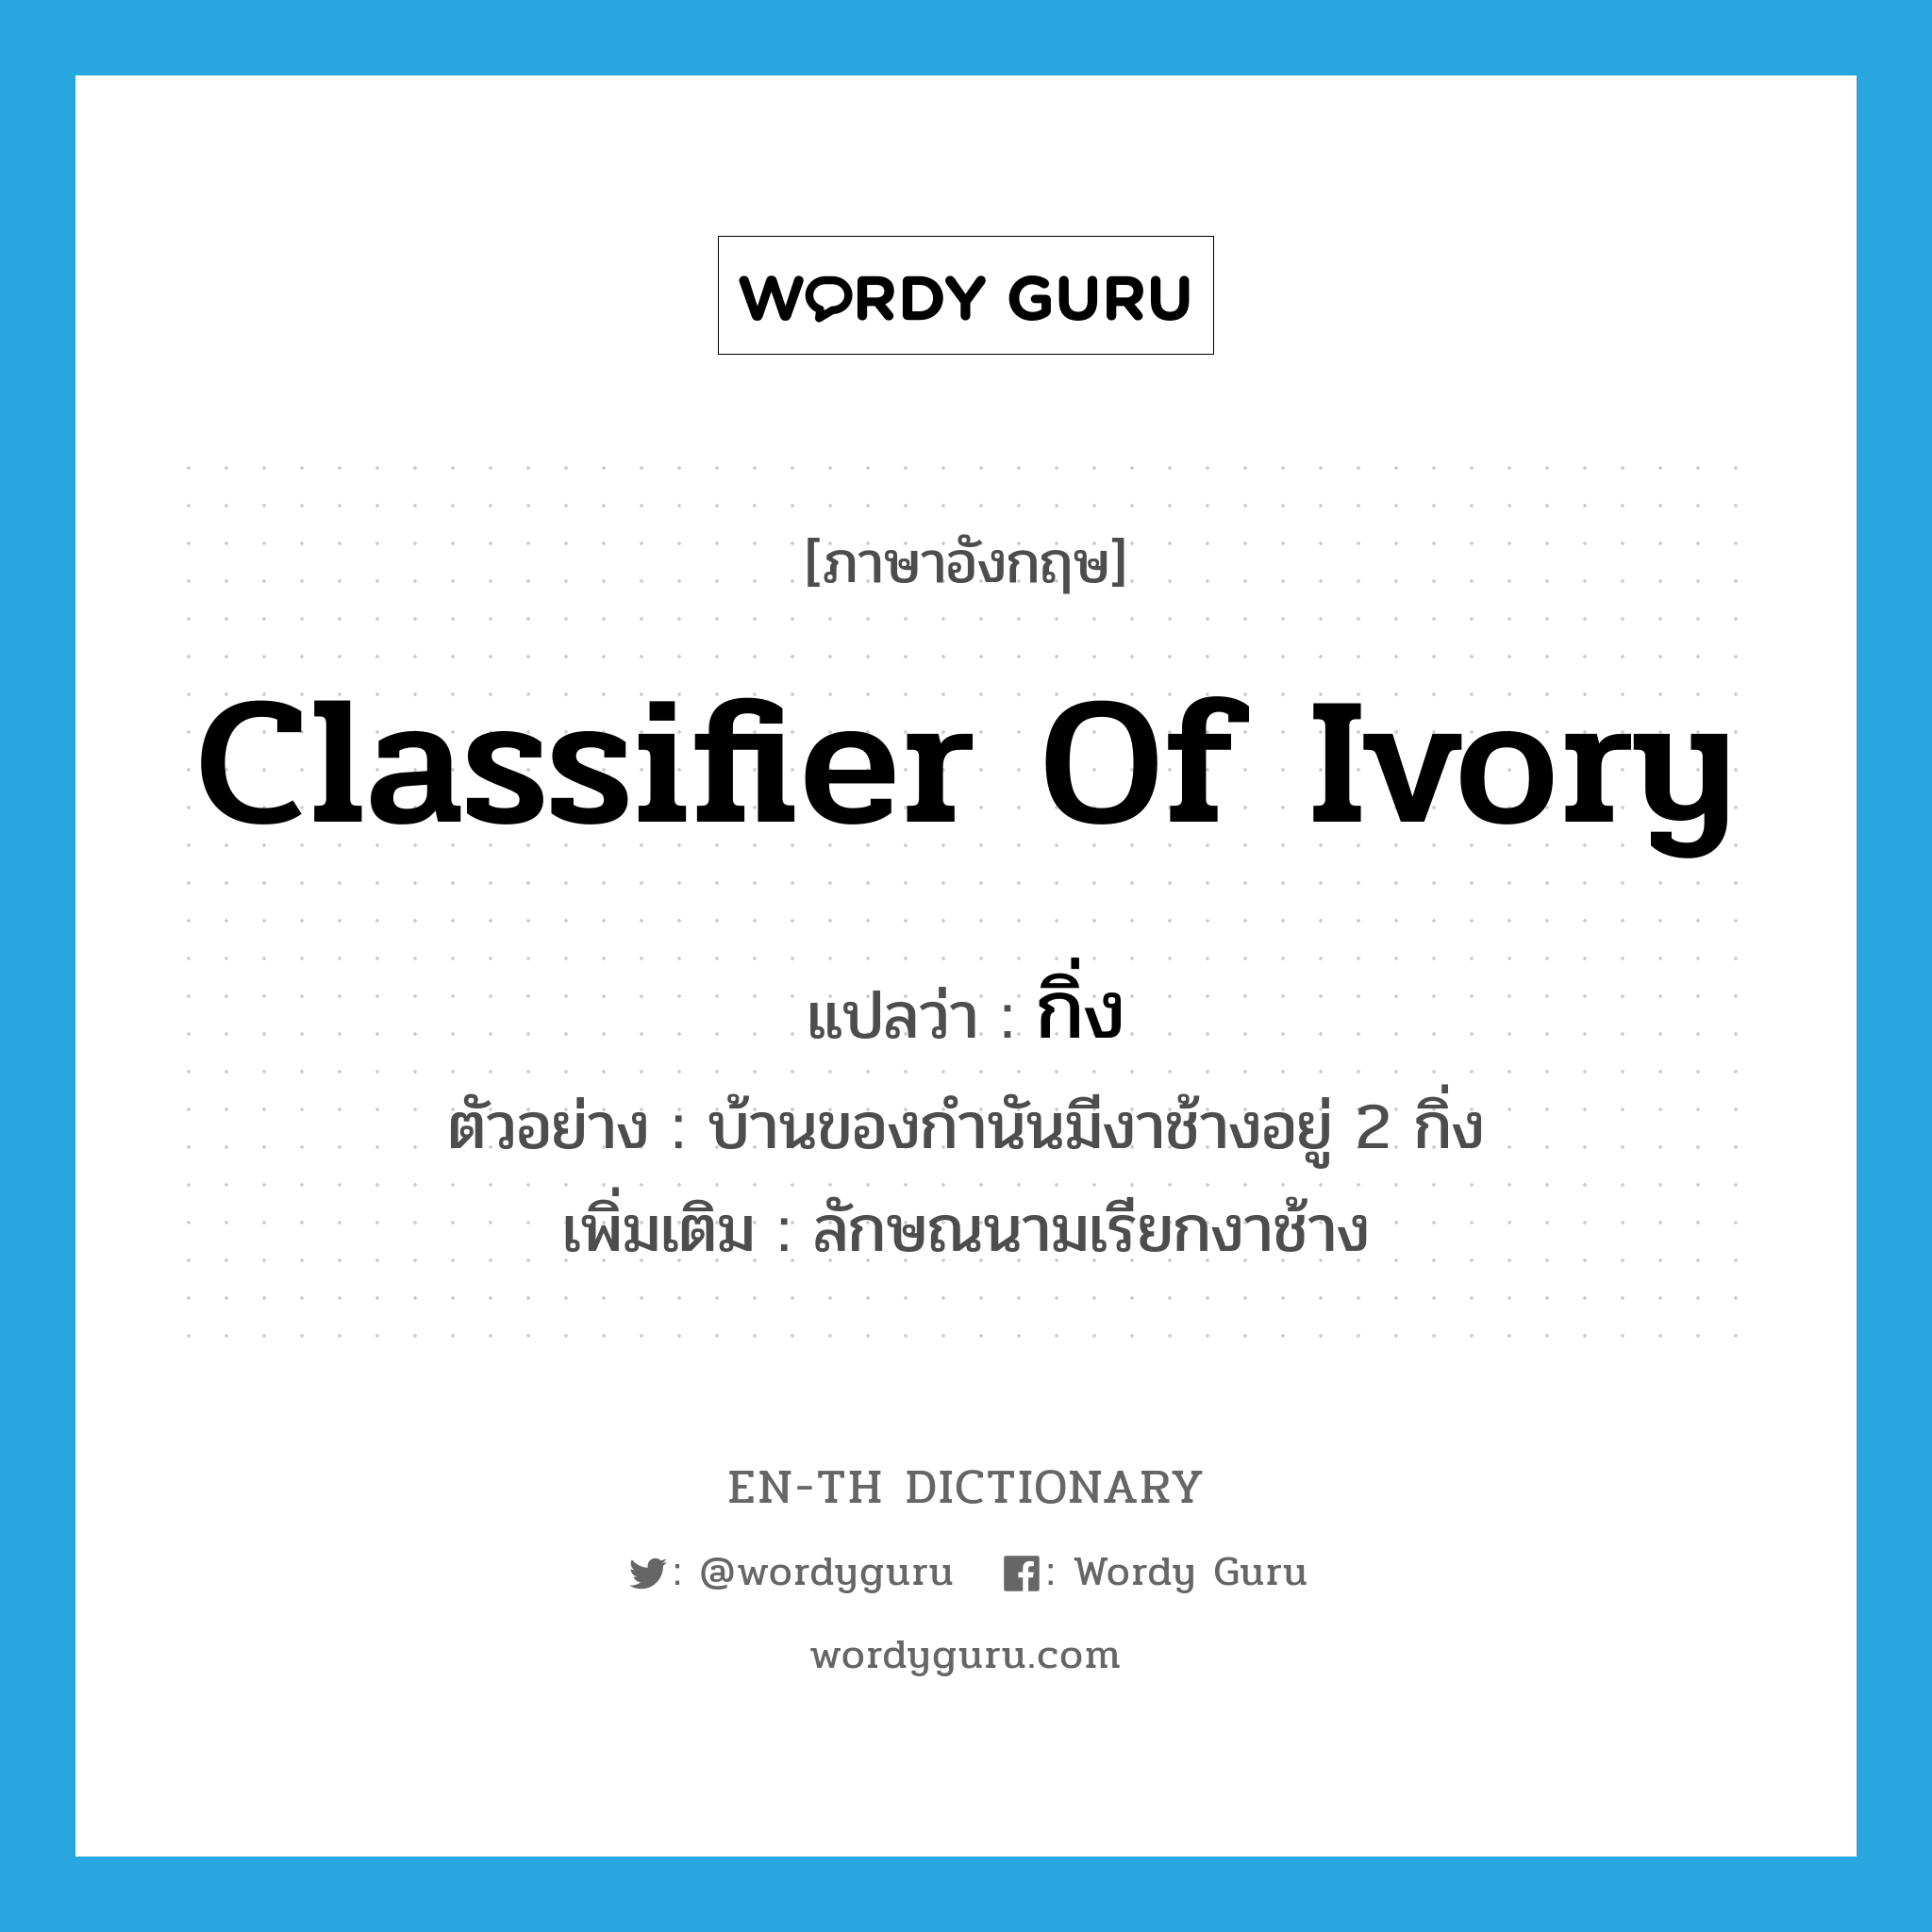 classifier of ivory แปลว่า?, คำศัพท์ภาษาอังกฤษ classifier of ivory แปลว่า กิ่ง ประเภท CLAS ตัวอย่าง บ้านของกำนันมีงาช้างอยู่ 2 กิ่ง เพิ่มเติม ลักษณนามเรียกงาช้าง หมวด CLAS